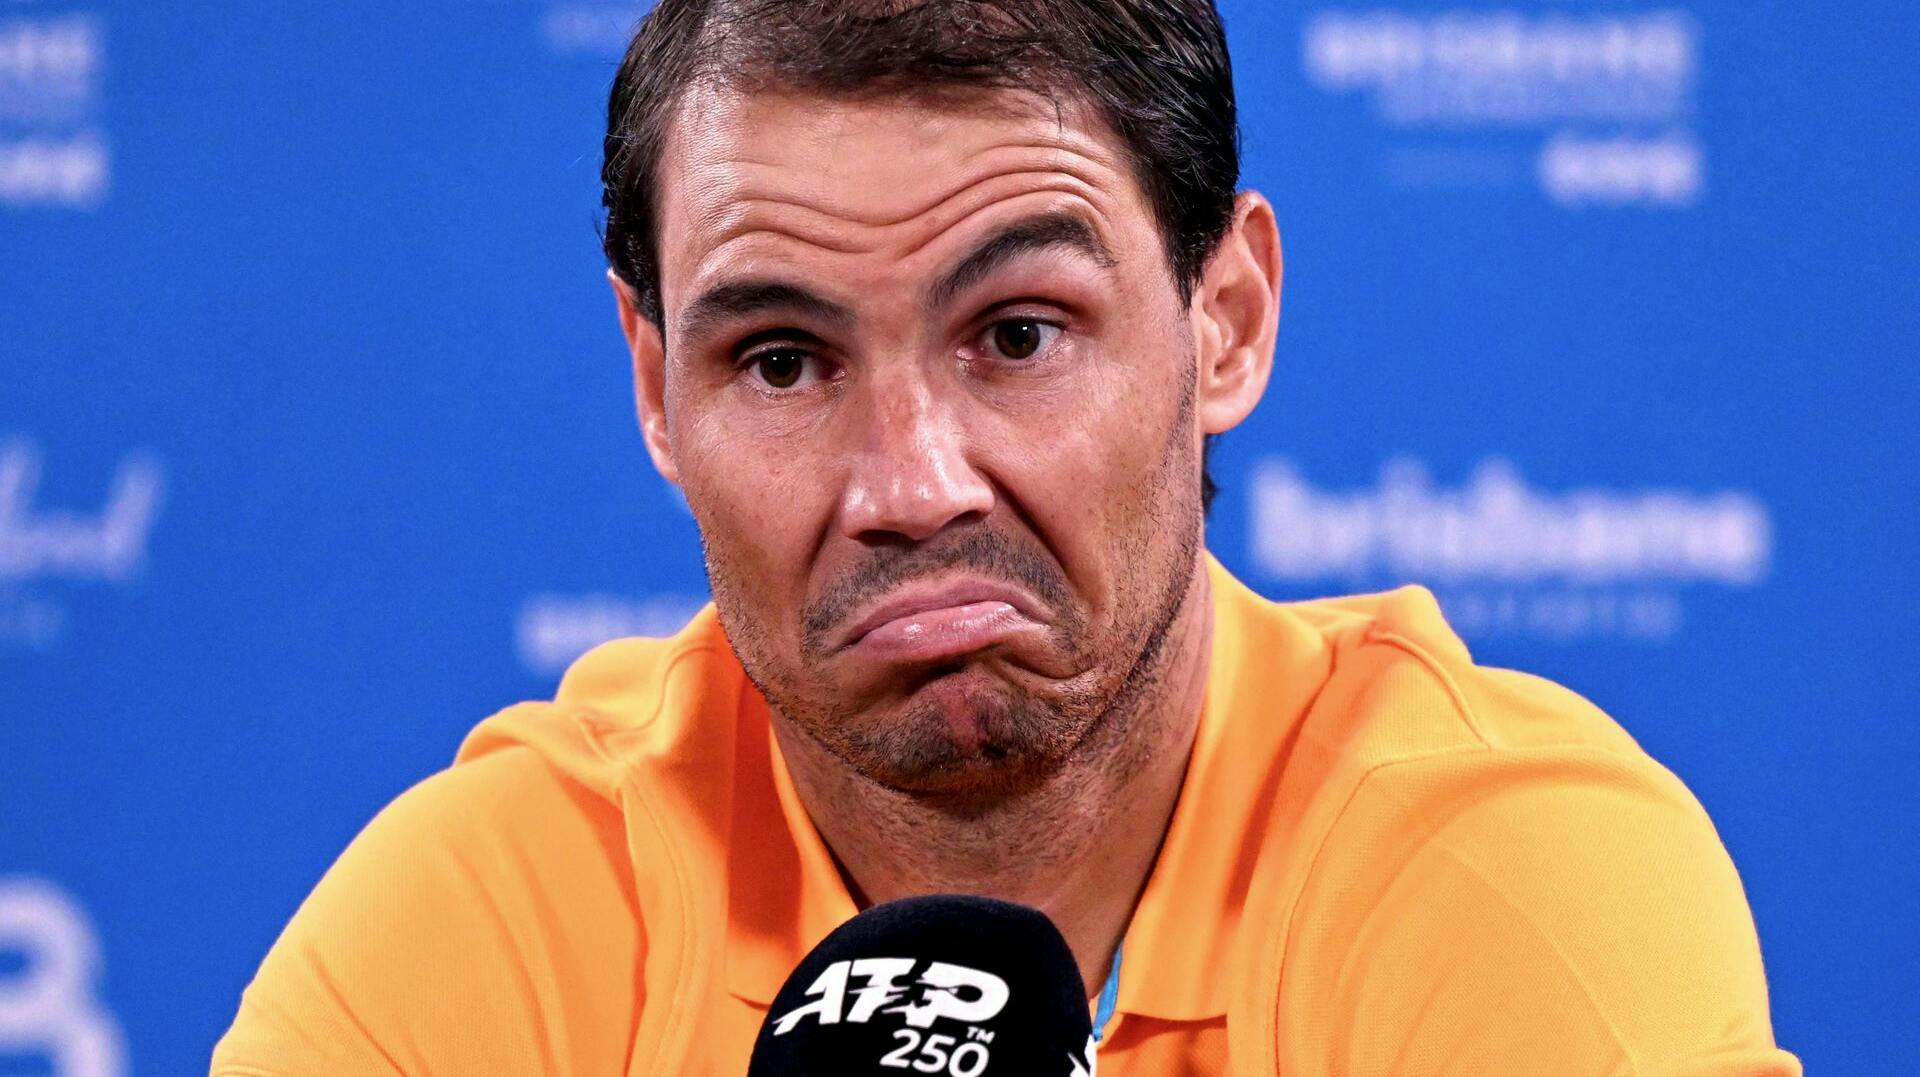 Tennisspilleren Rafael Nadal trækker sig fra Australian Open på grund af en skade.